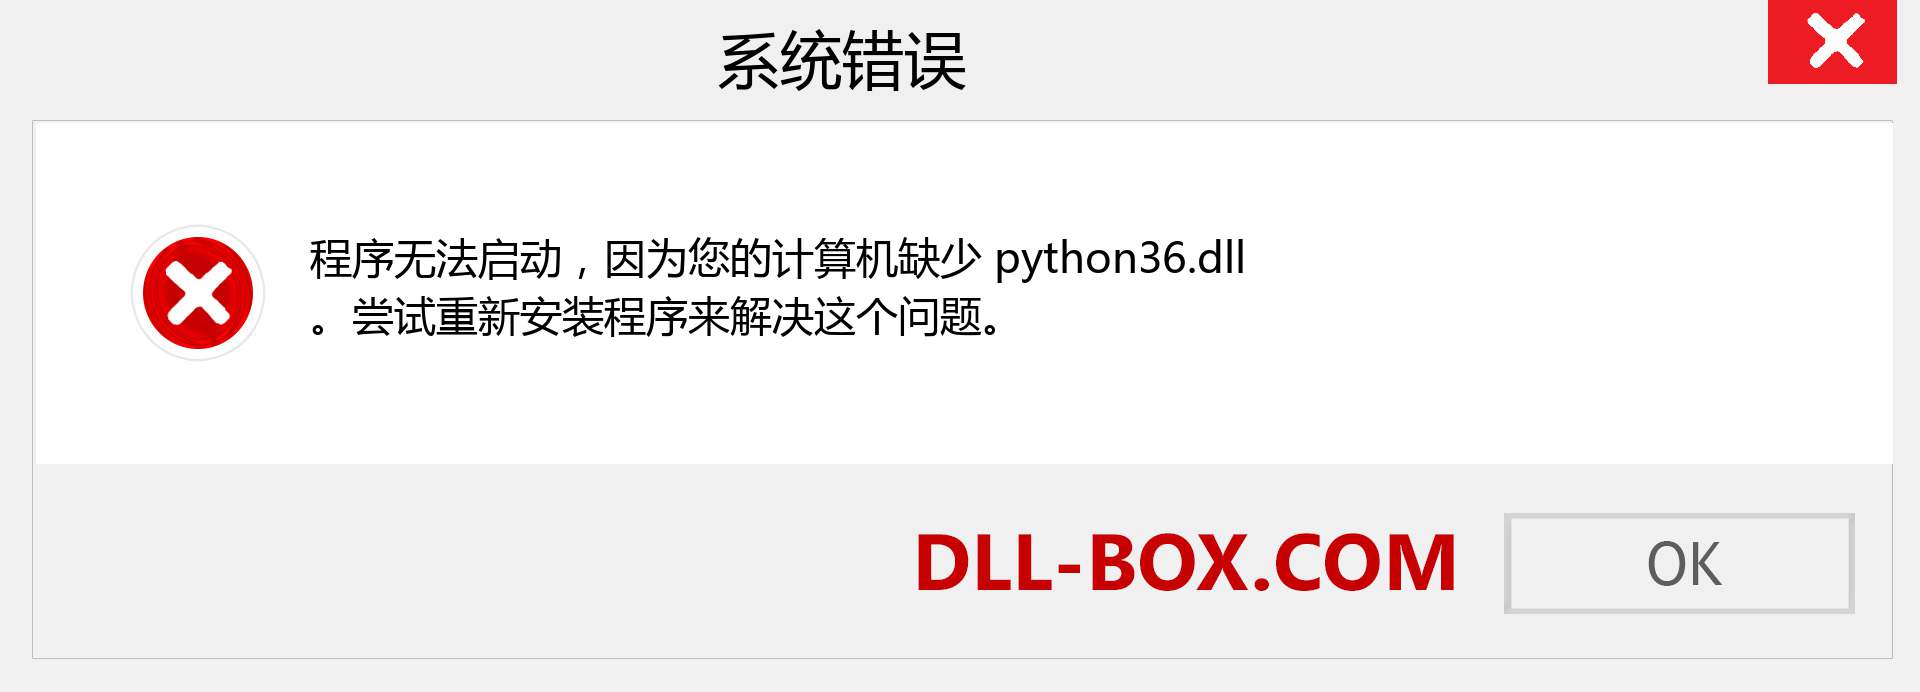 python36.dll 文件丢失？。 适用于 Windows 7、8、10 的下载 - 修复 Windows、照片、图像上的 python36 dll 丢失错误